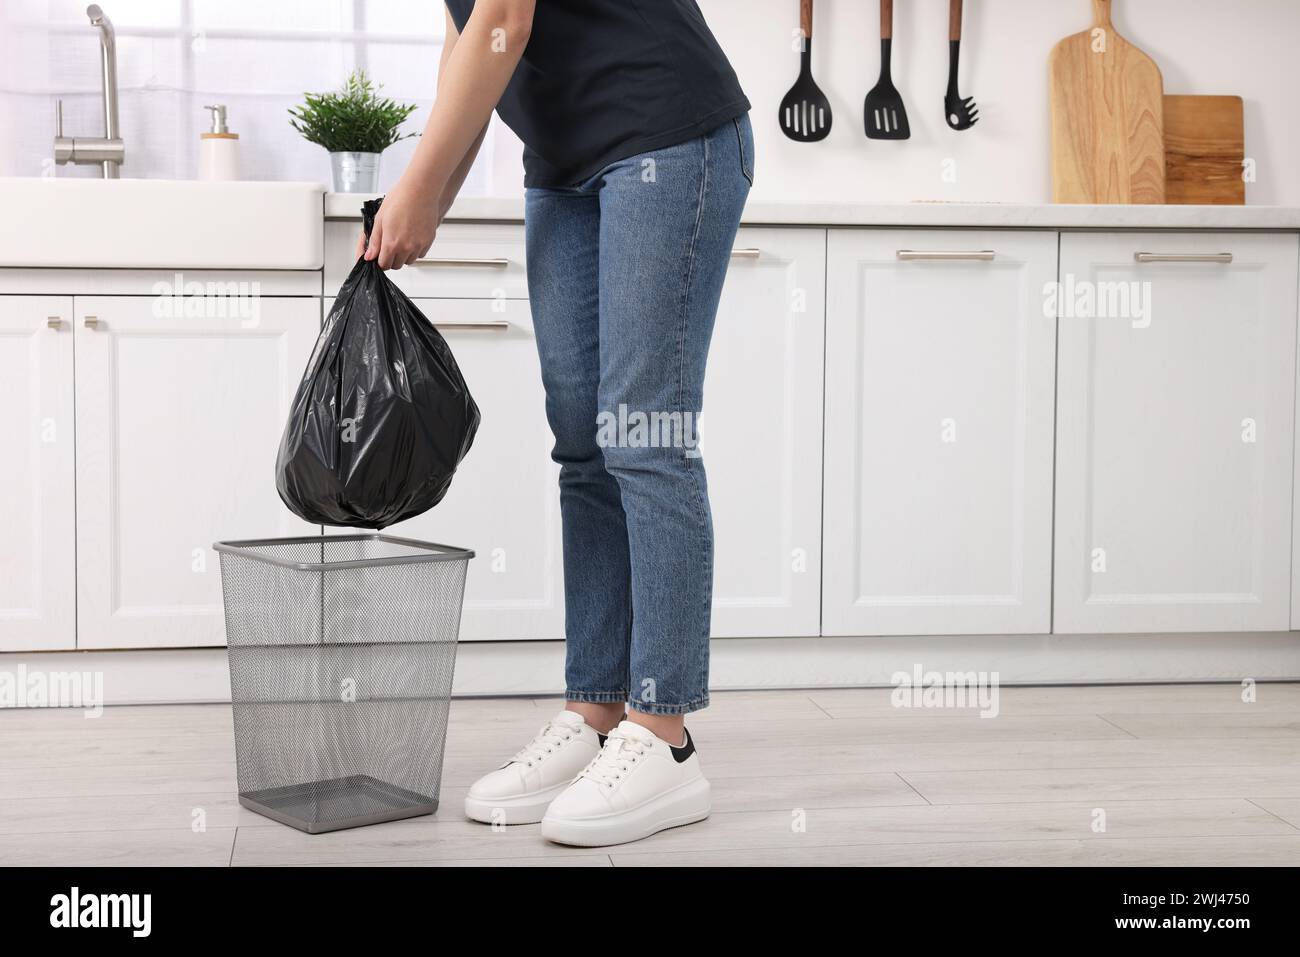 Donna che prende la spazzatura dal cestino della spazzatura in cucina, primo piano Foto Stock